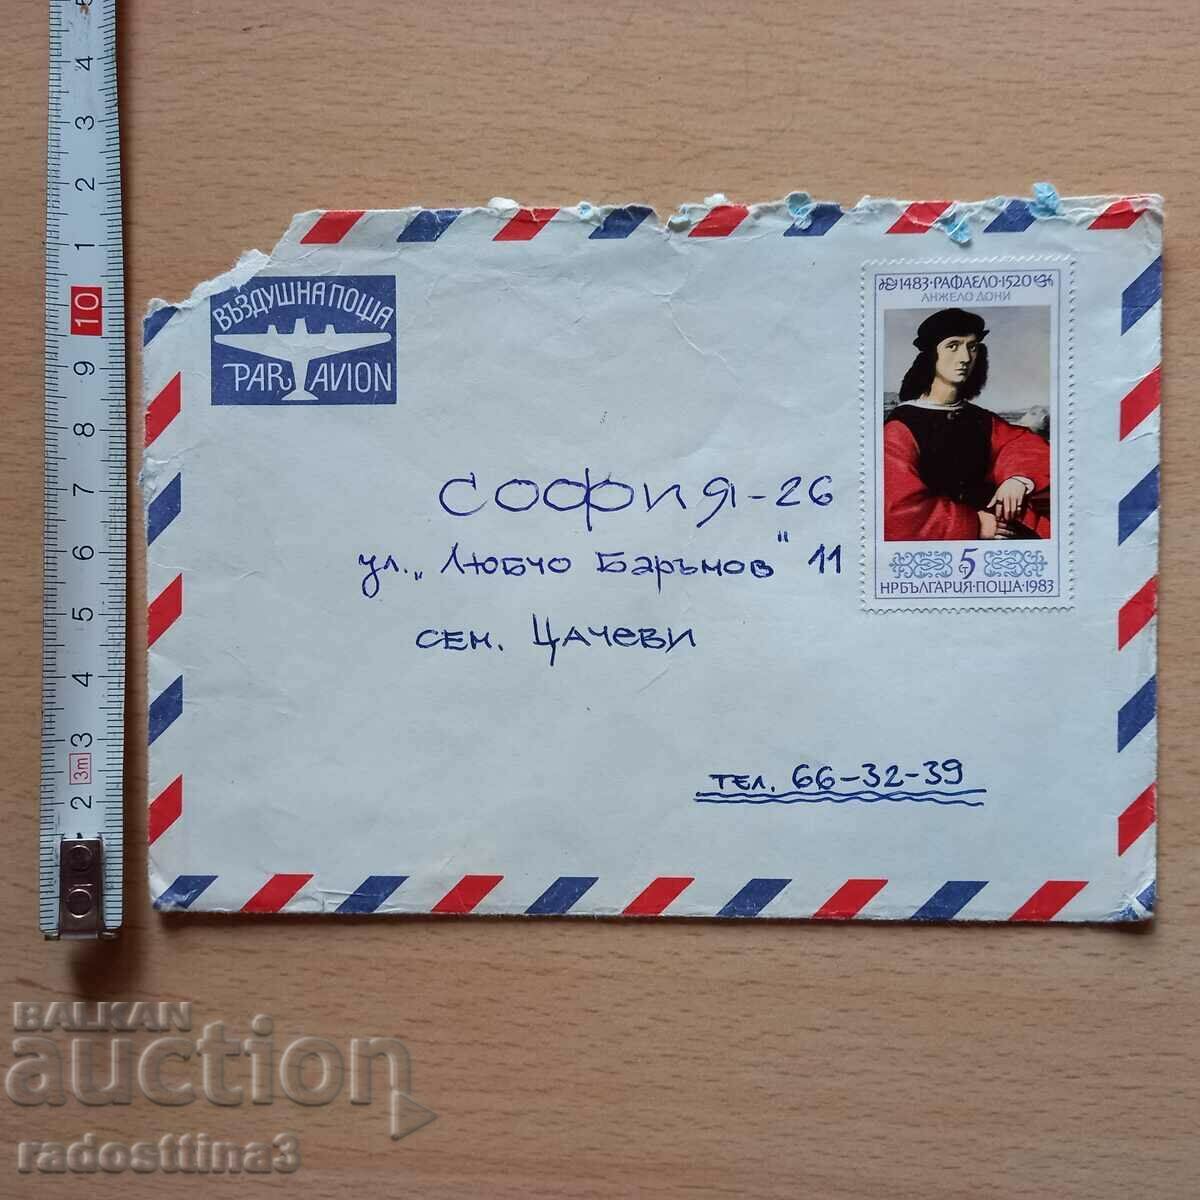 Ταχυδρομικός φάκελος με μάρκα Βουλγαρίας